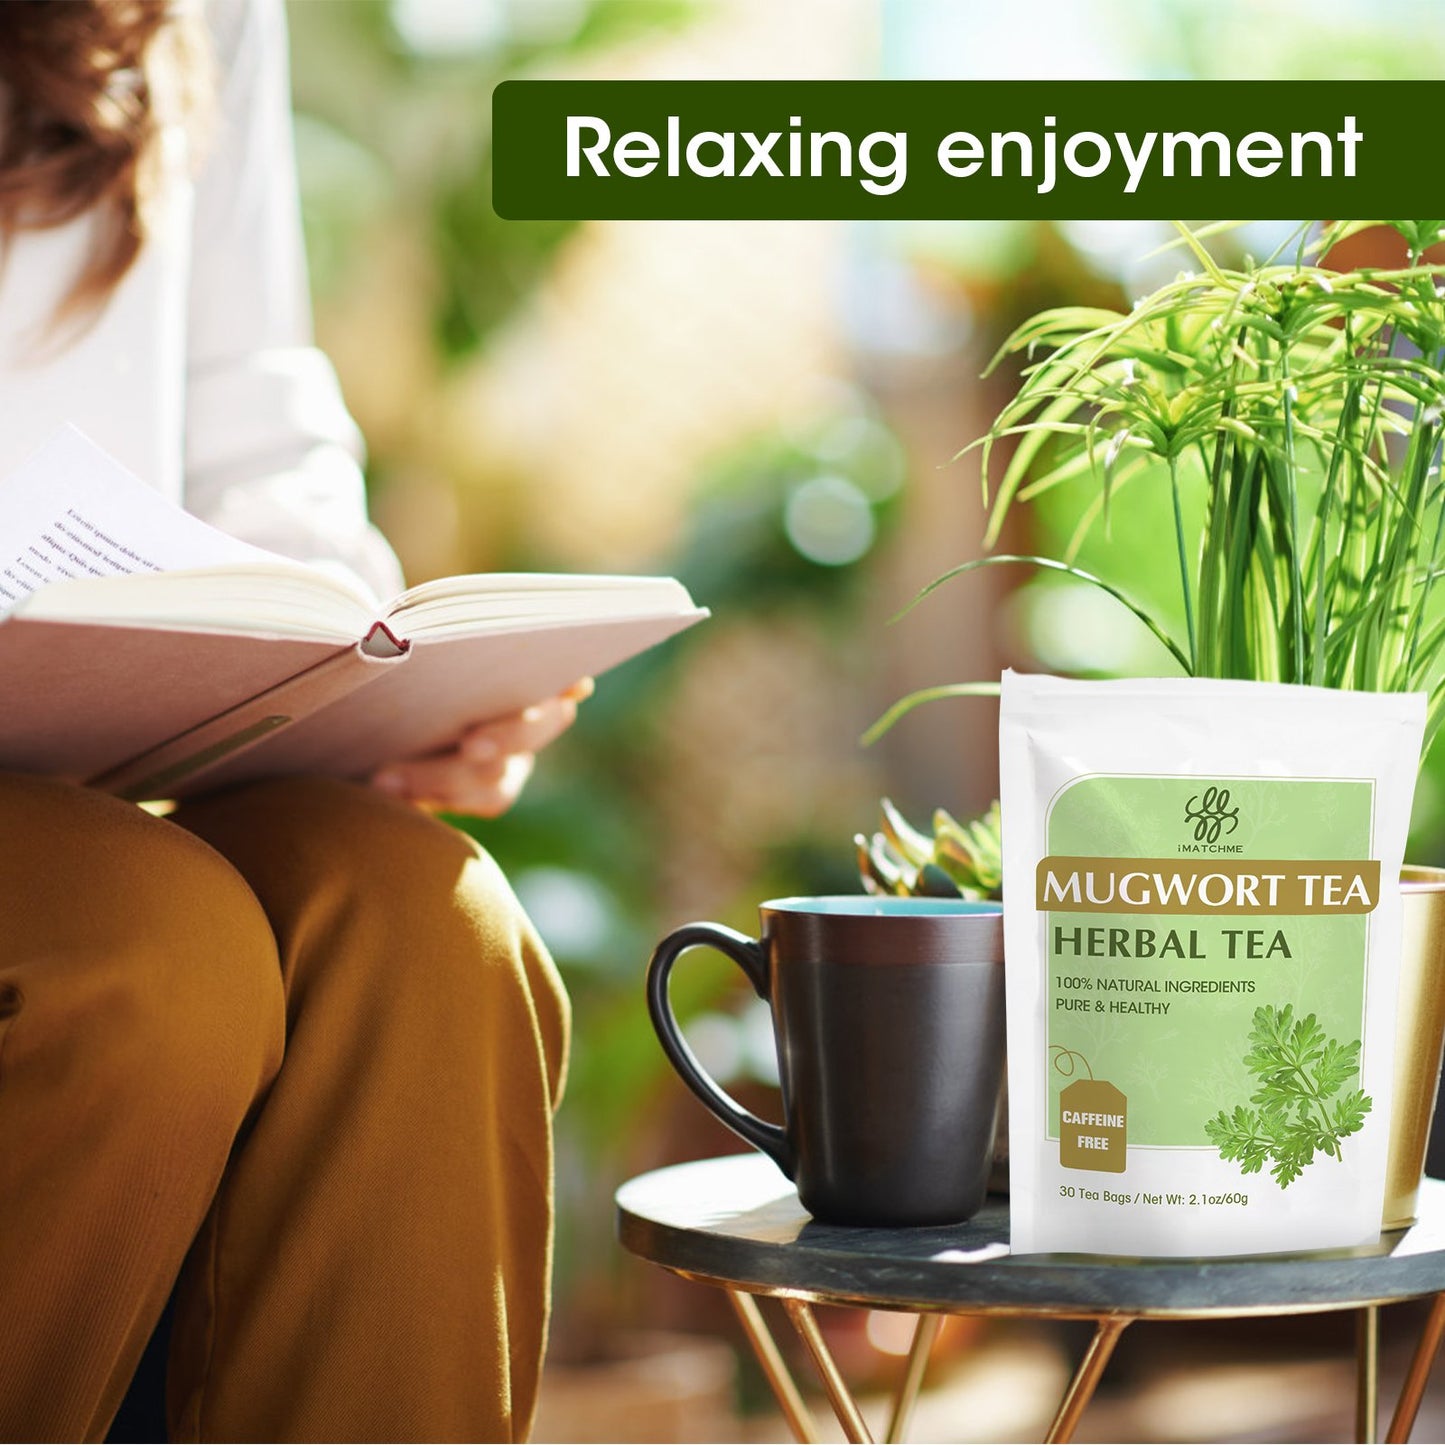 Mugwort Tea Bags -  Natural Artemisia Vulgaris Herb